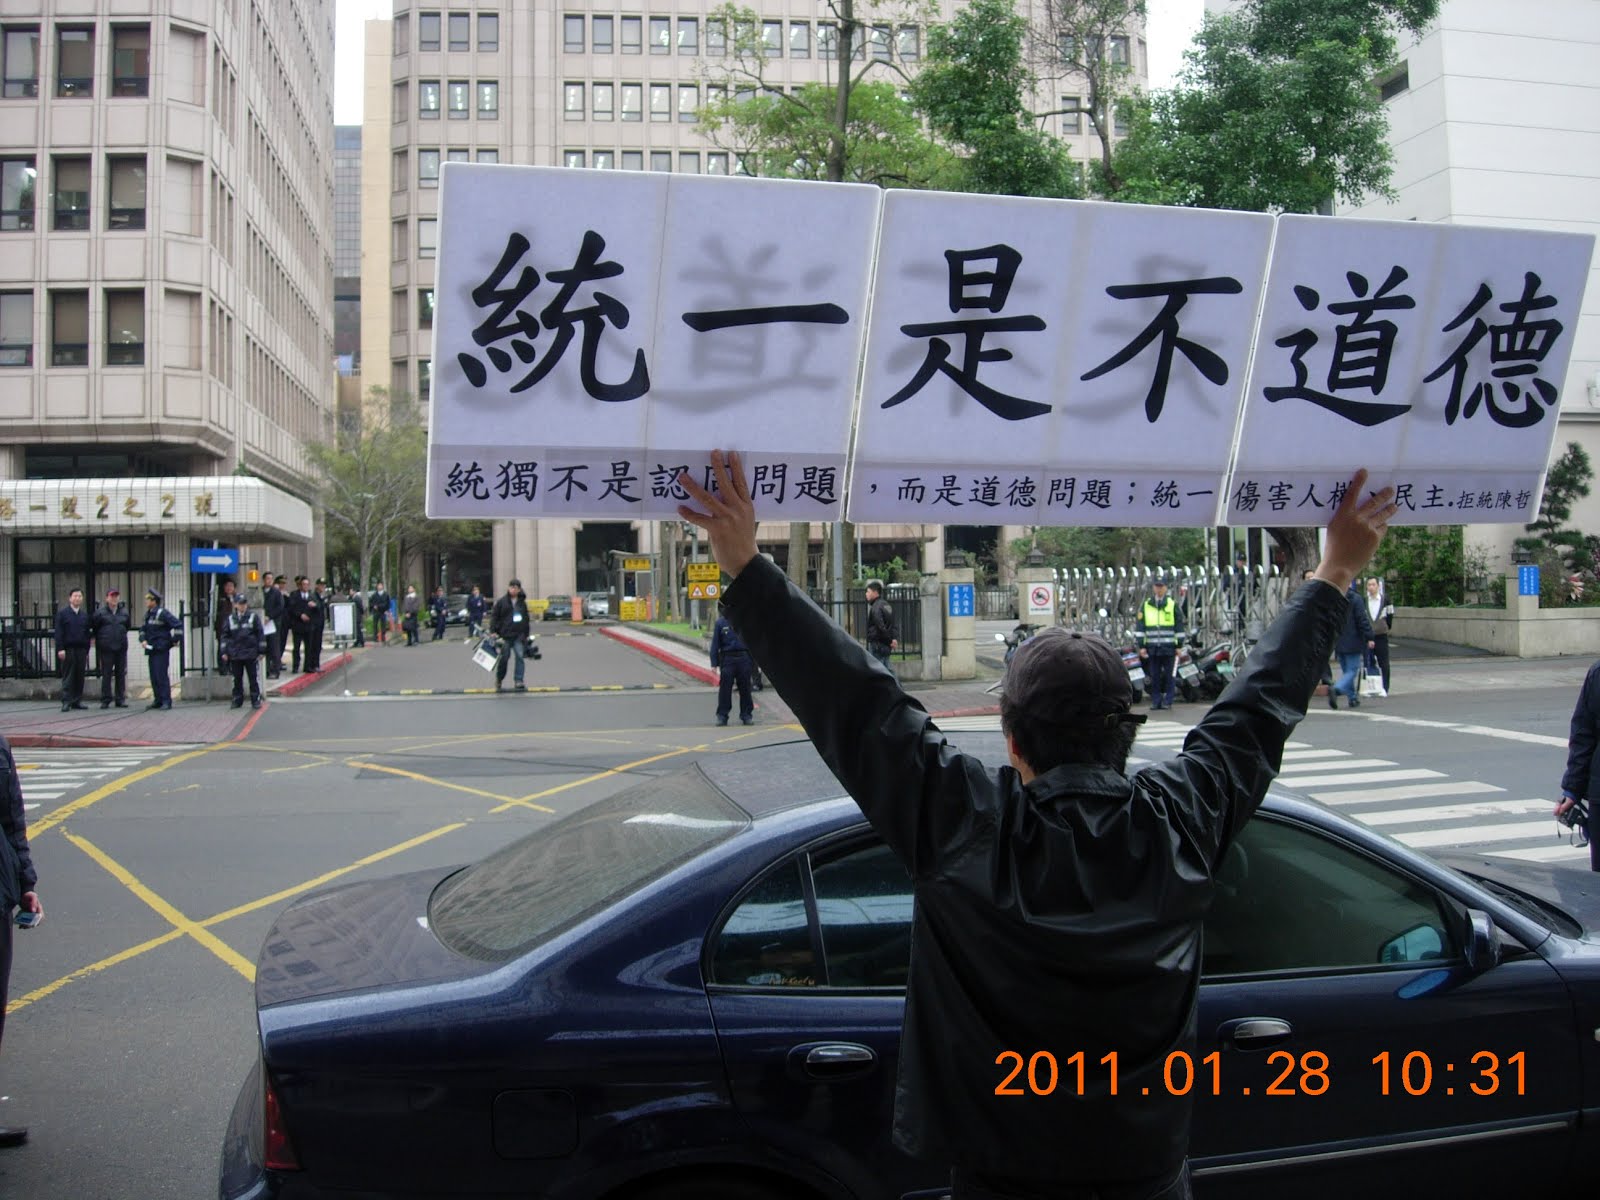 陳立民 Chen Lih Ming (陳哲) 舉「統一是不道德的！」看板，上附「統獨不是認同問題，而是道德問題；統一傷害人權與民主，是不道德的。」20110128在陸委會20週年場抗議馬英九總統。